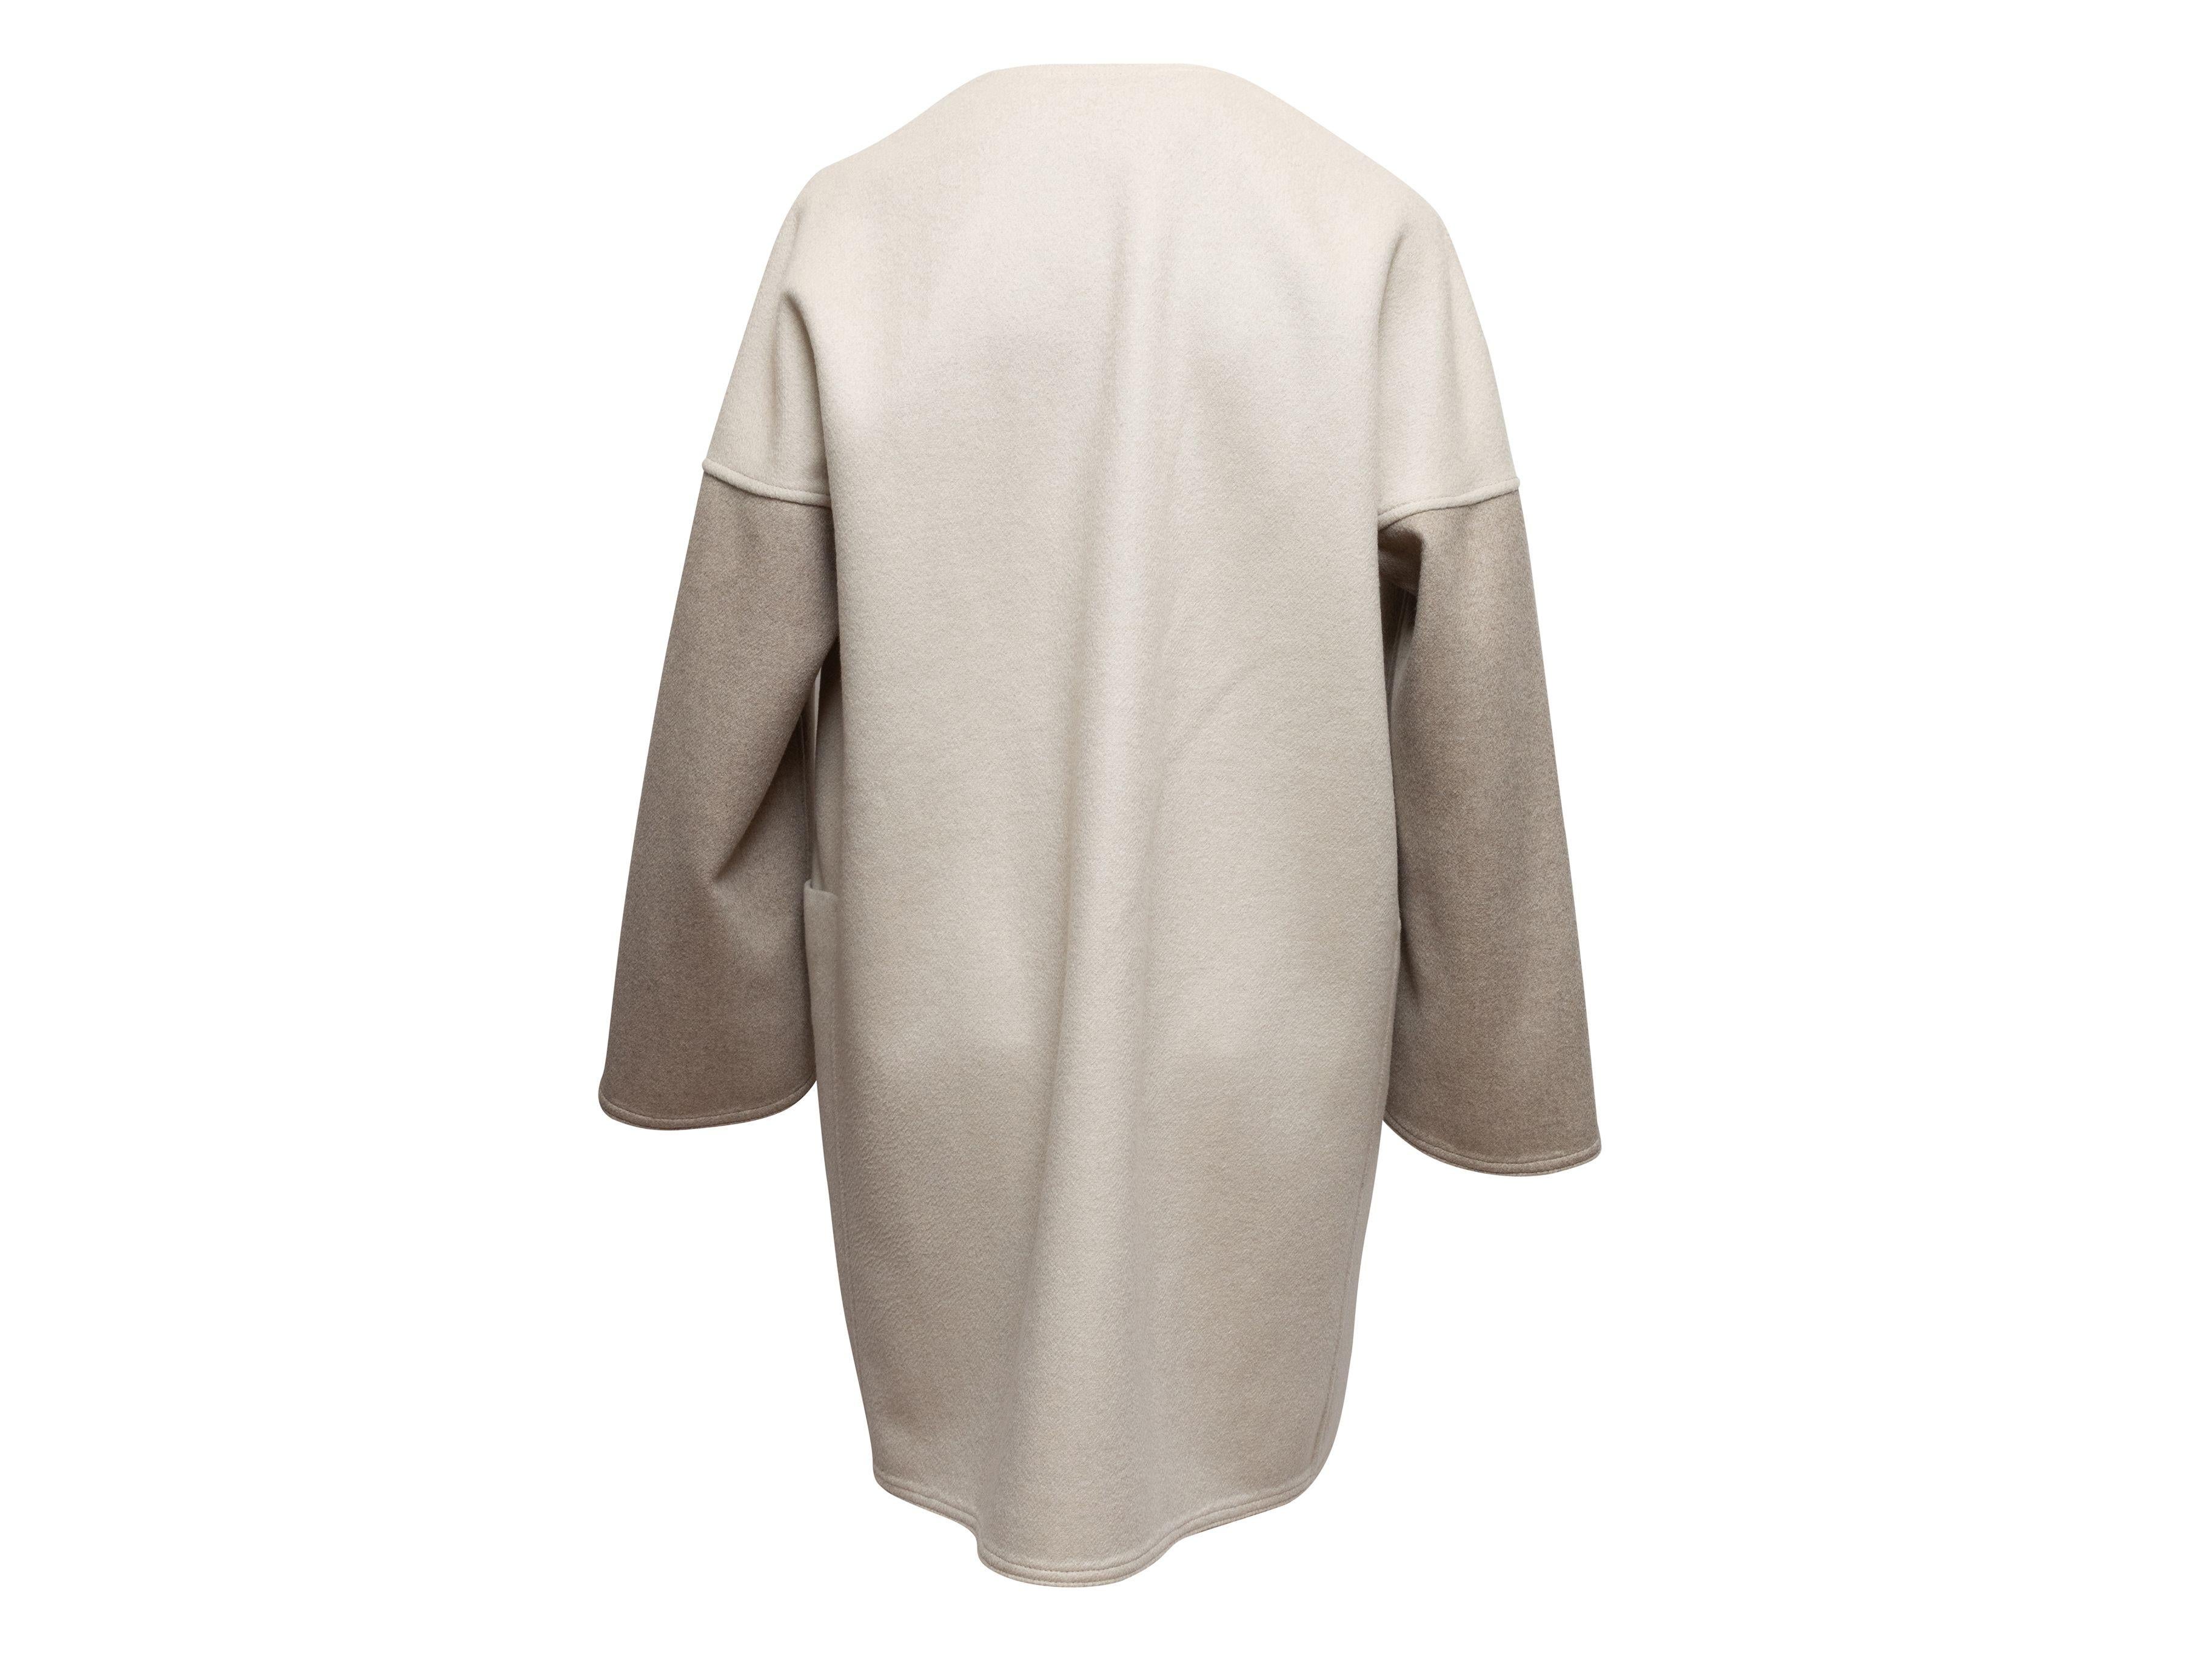 Meerstein Grey & Cream Reversible Cashmere & Sable Fur Coat 1